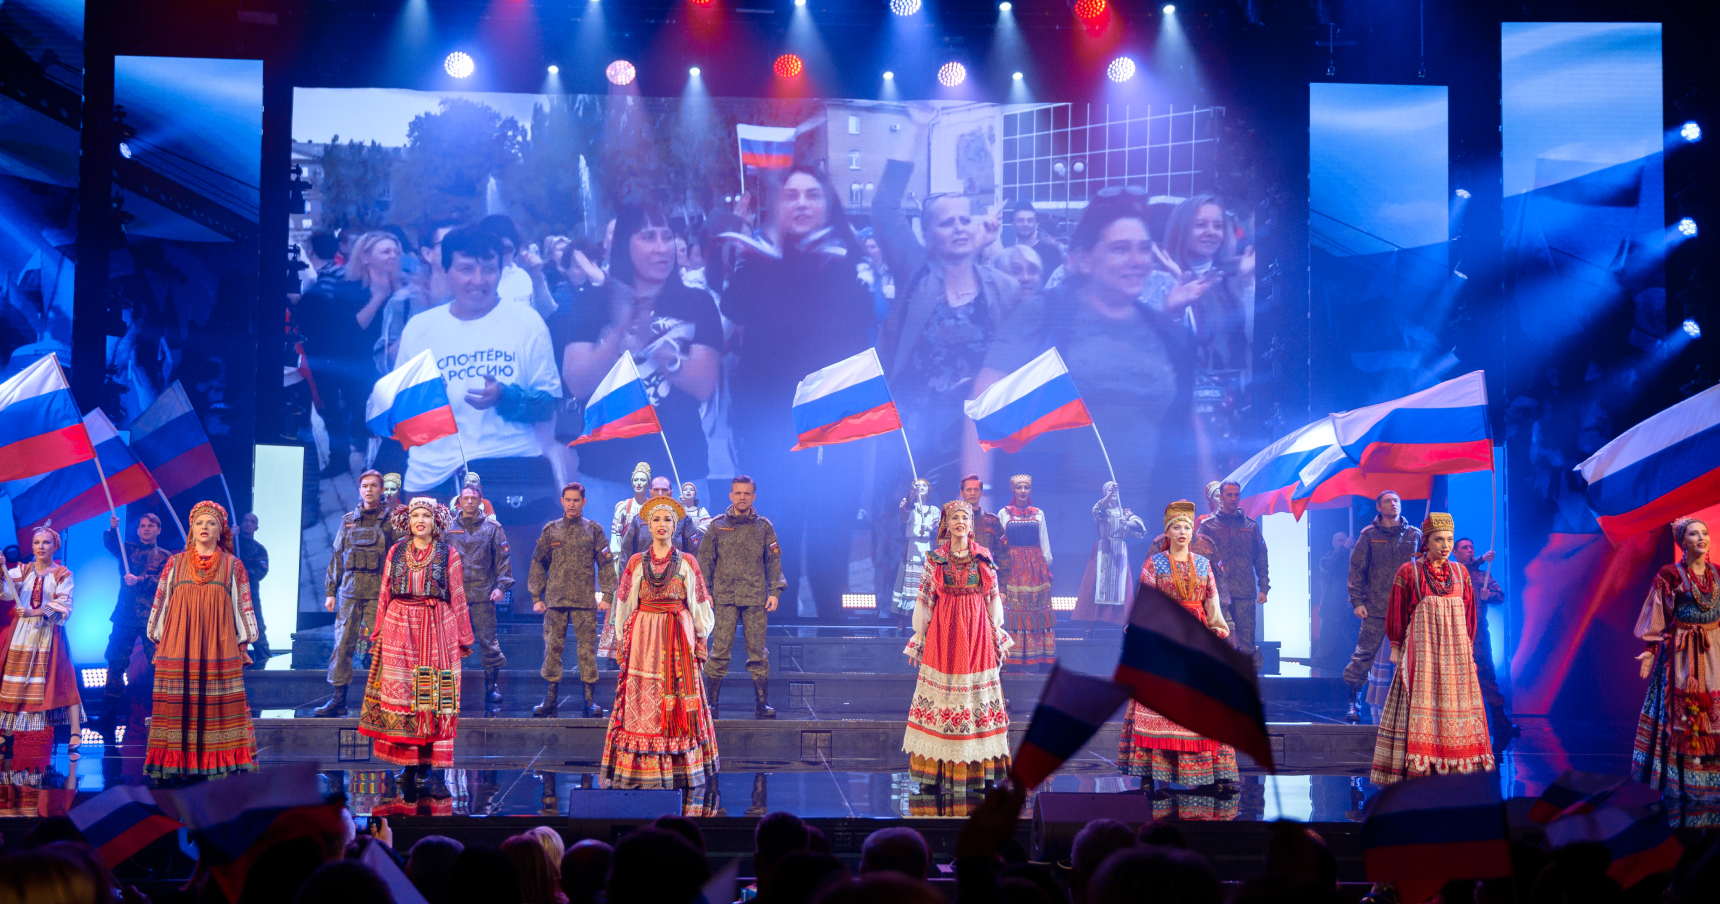 russian concert san francisco